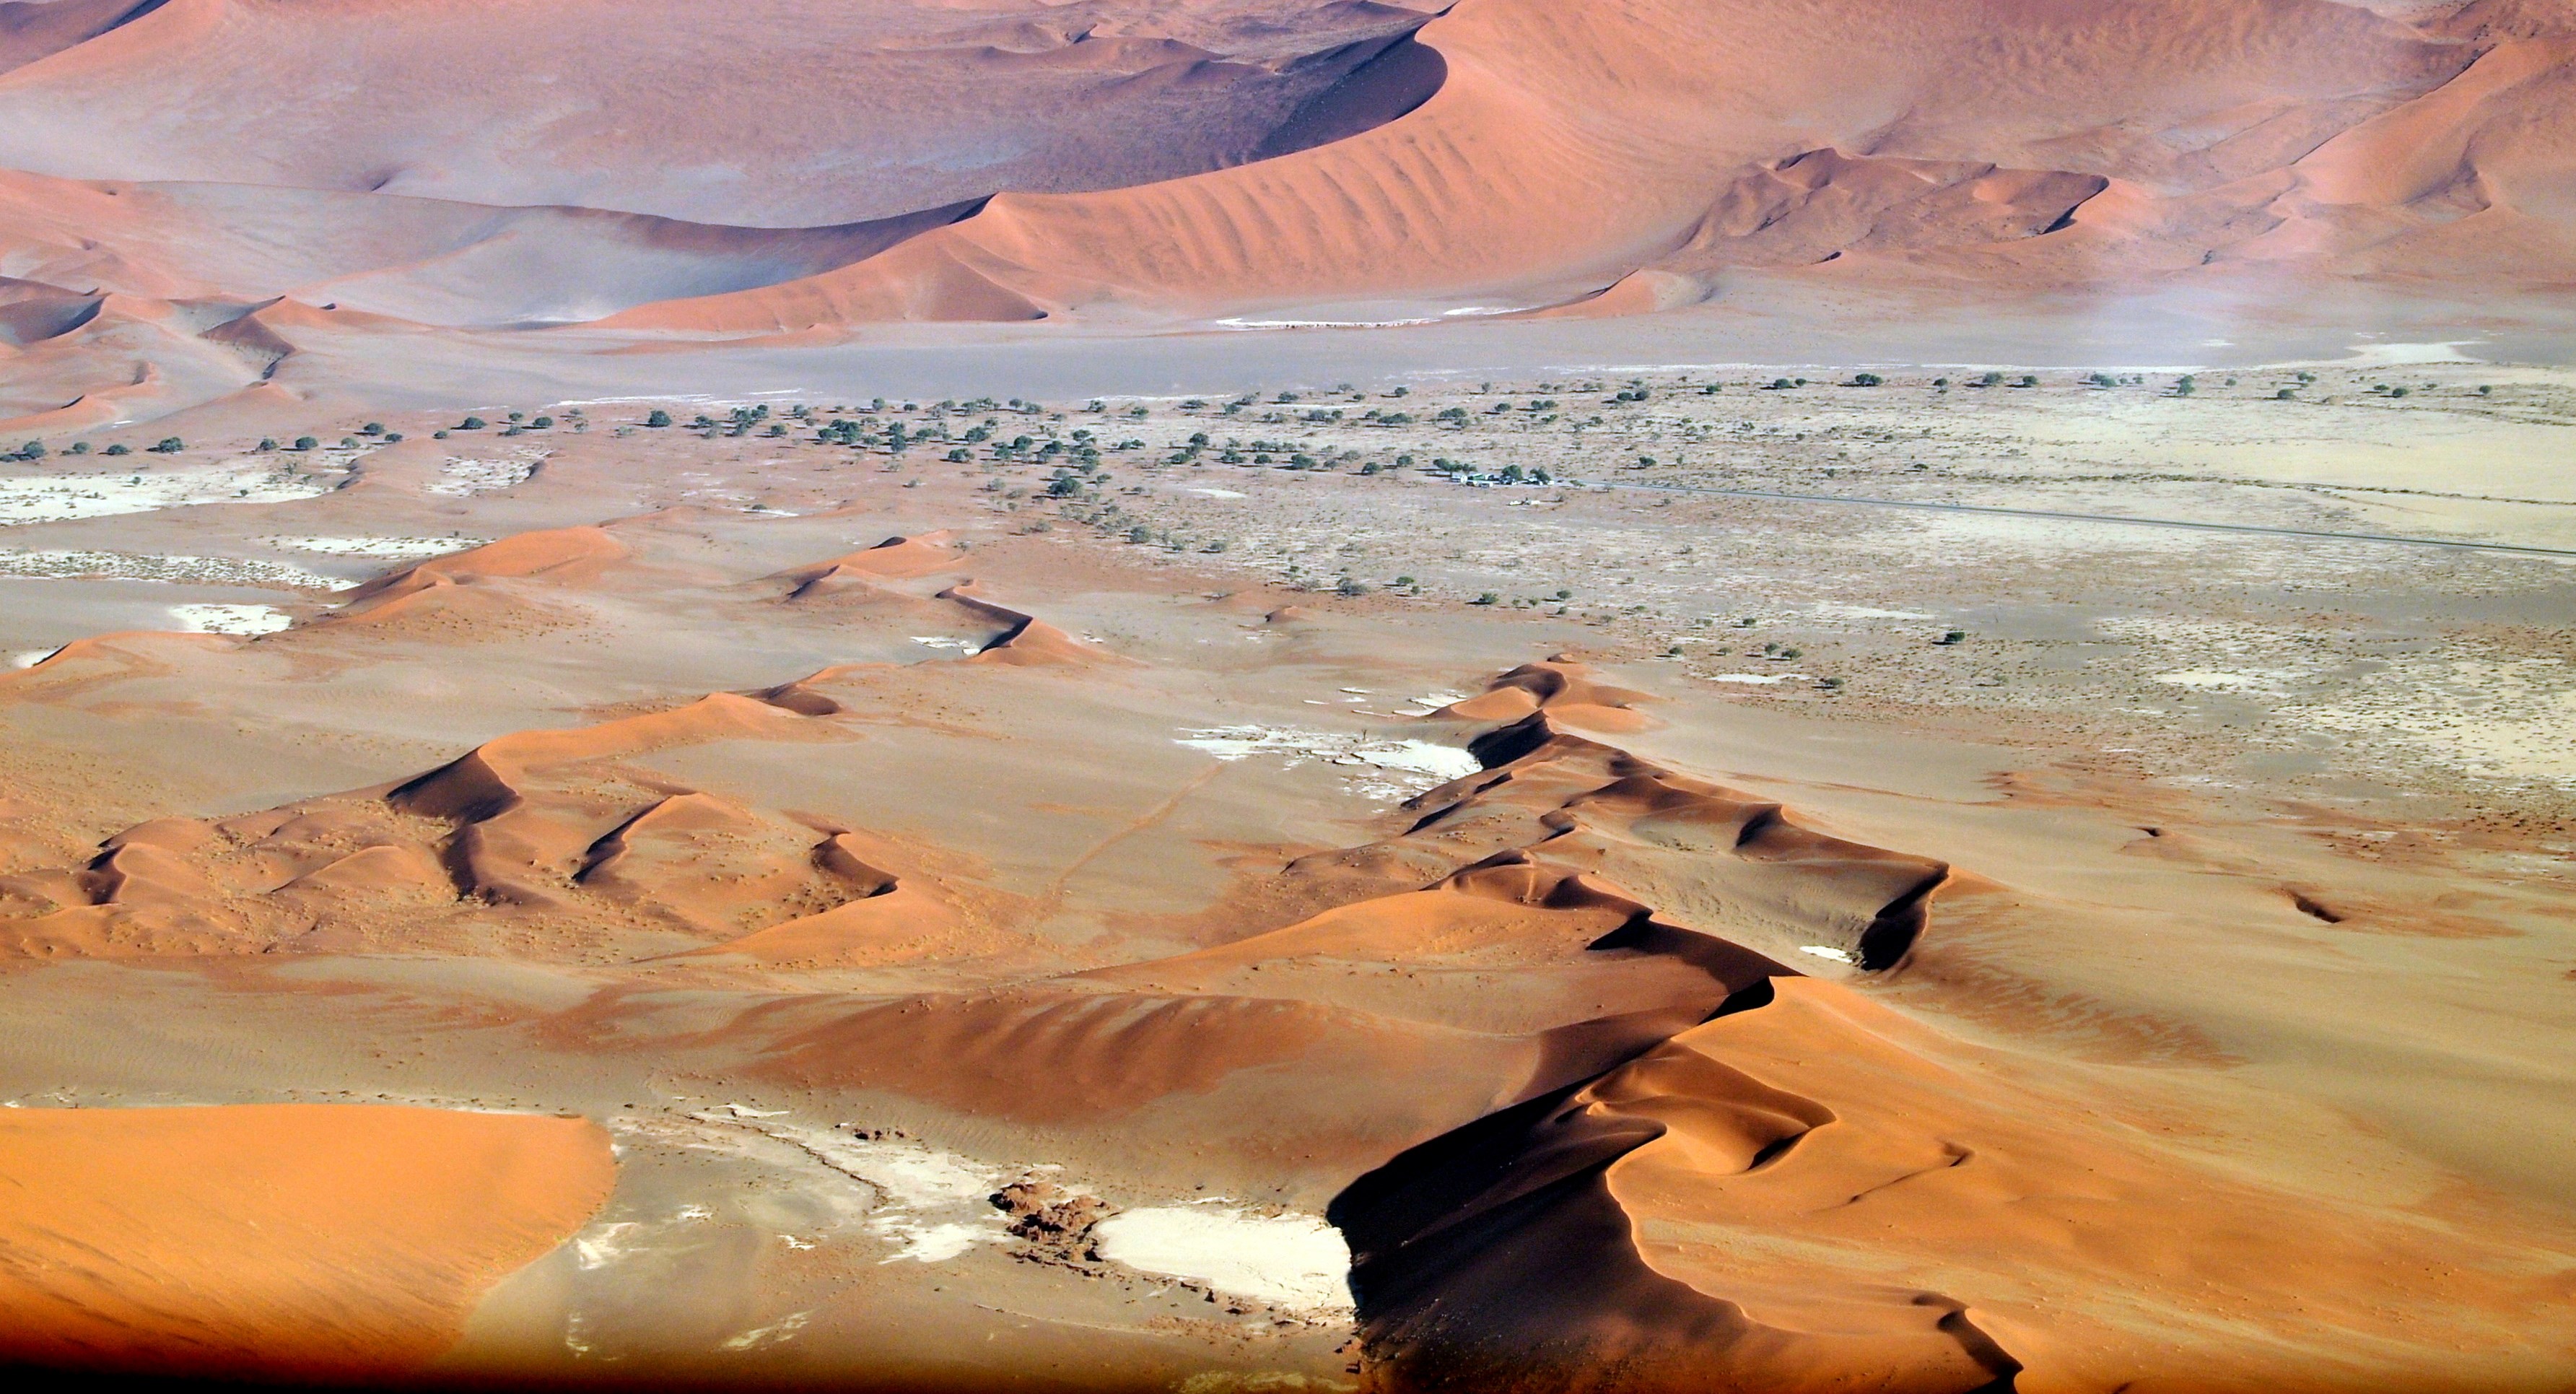 Namibia - Namib Desert.jpg